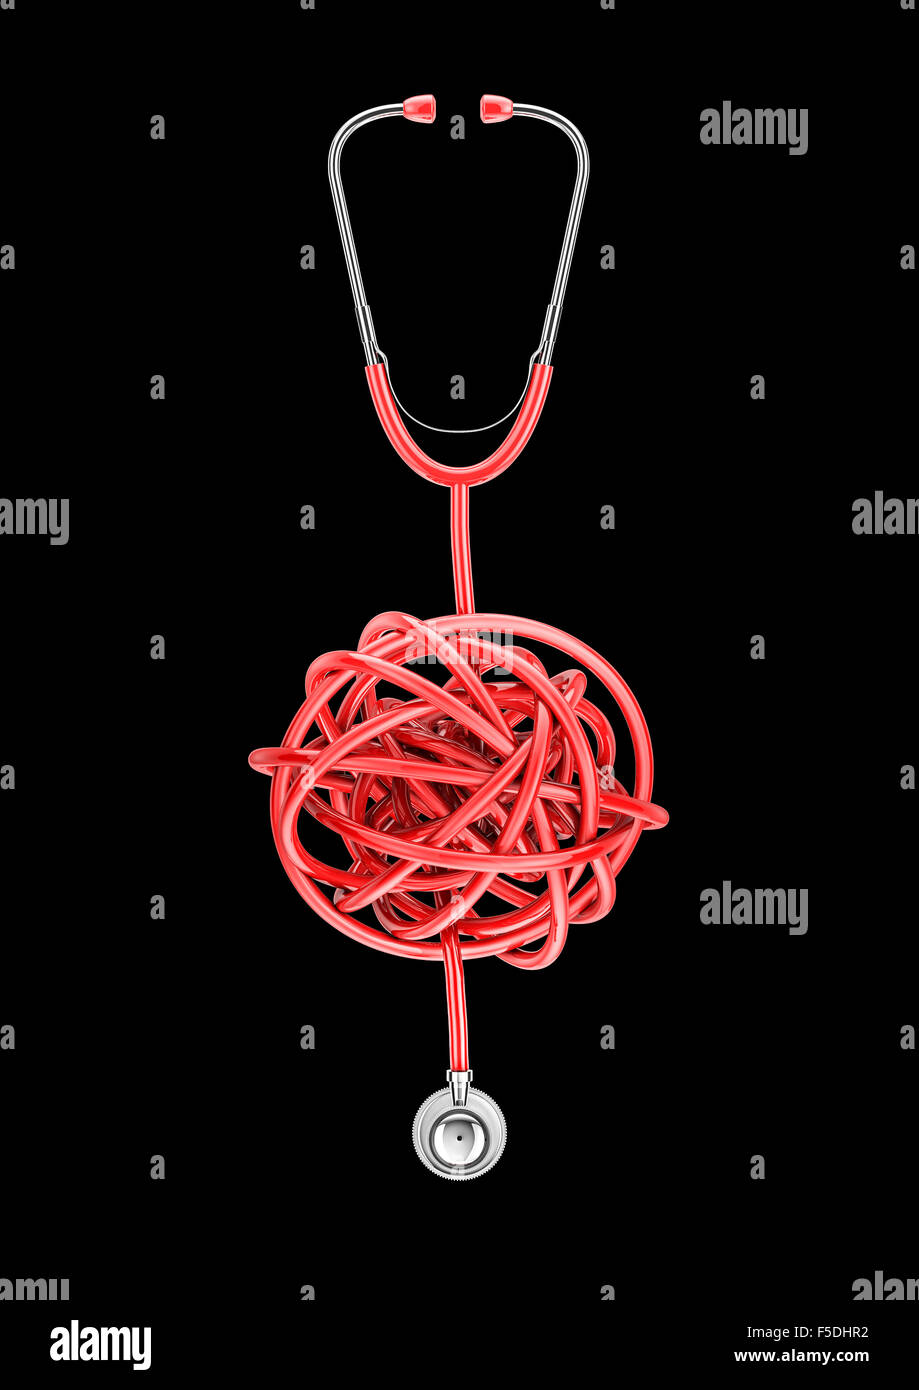 Stethoskop Knoten / 3D-Render des Stethoskop mit Schlauch verdreht Knoten Stockfoto